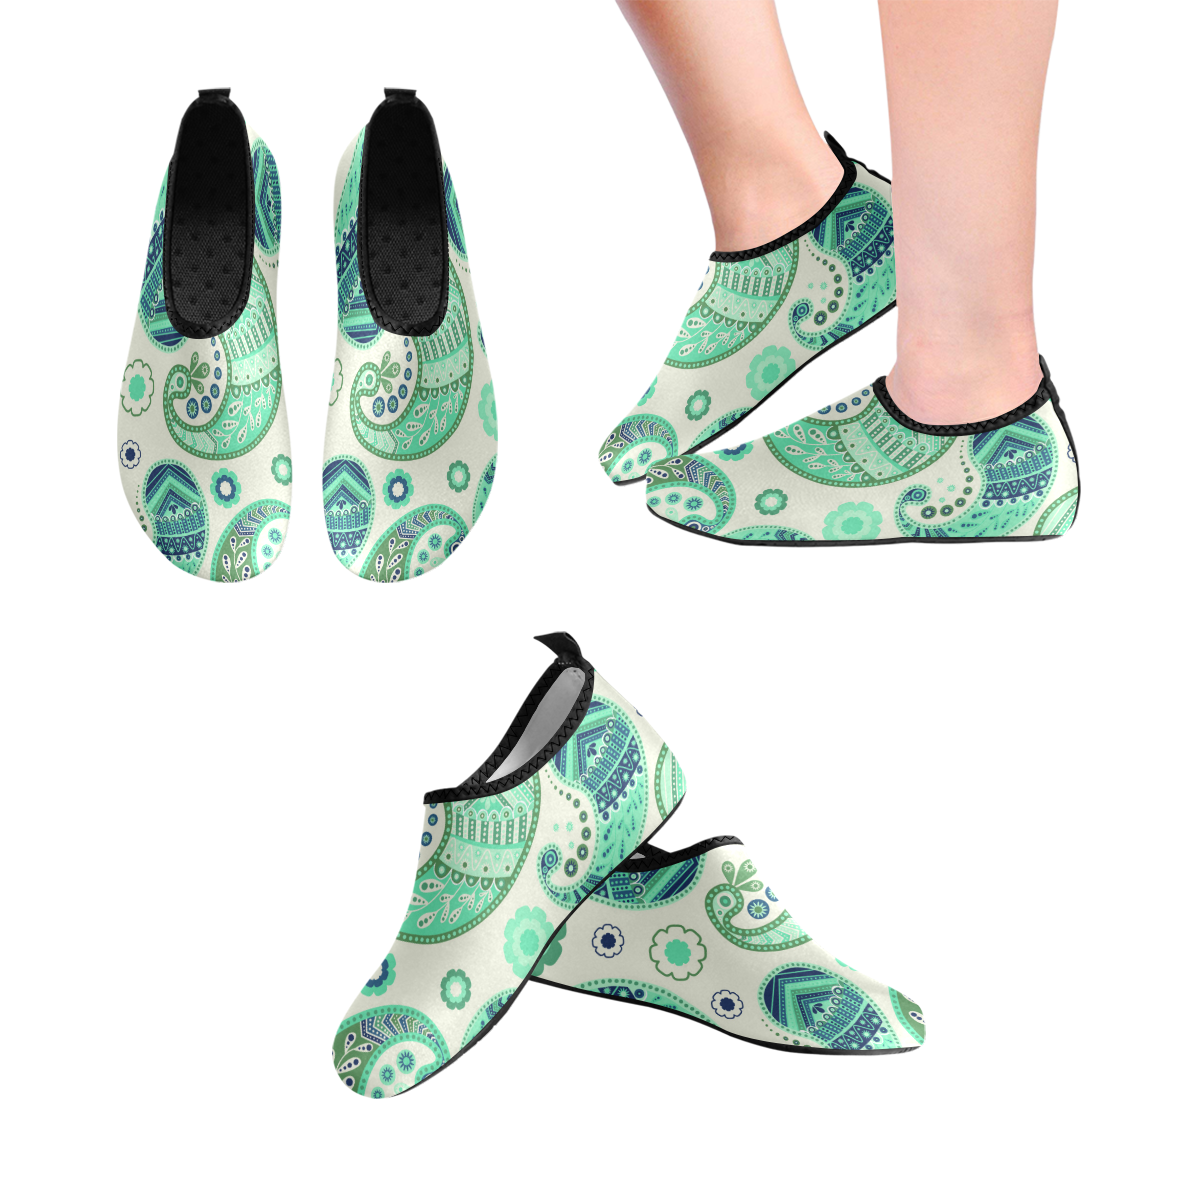 Seafoam Paisley Women's Slip-On Water Shoes (Model 056)